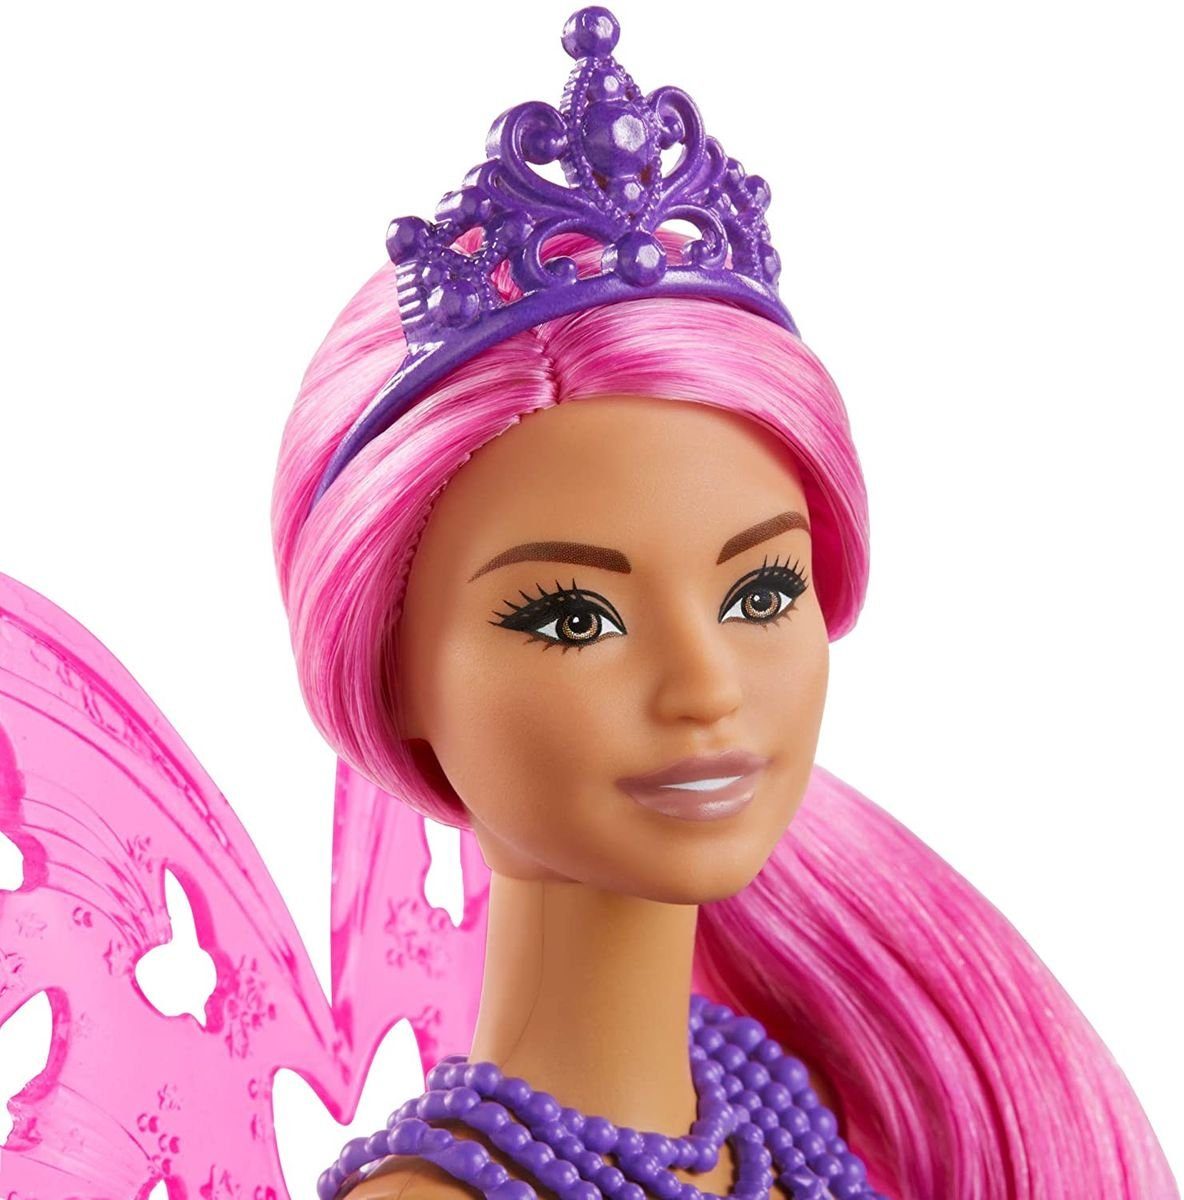 Mattel® Anziehpuppe »Mattel GJJ99 - Barbie - Dreamtopia - Puppe, Fee mit  Flügeln und Diadem« online kaufen | OTTO